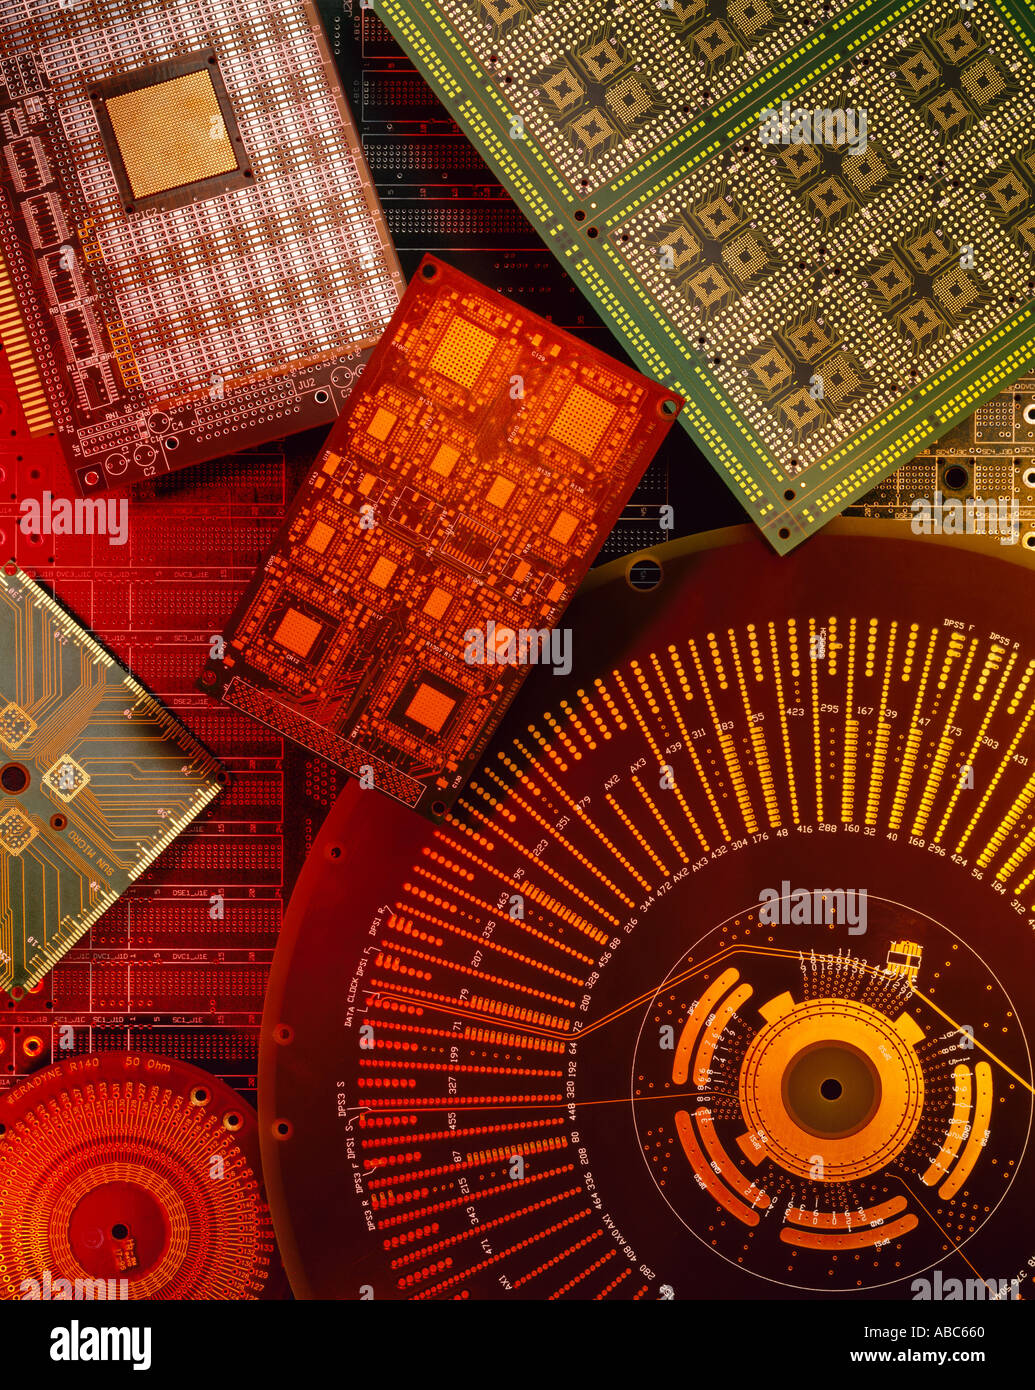 Elektronik - grafische Layout von Leiterplatten in verschiedenen Größen und Formen ohne Komponenten. Stockfoto